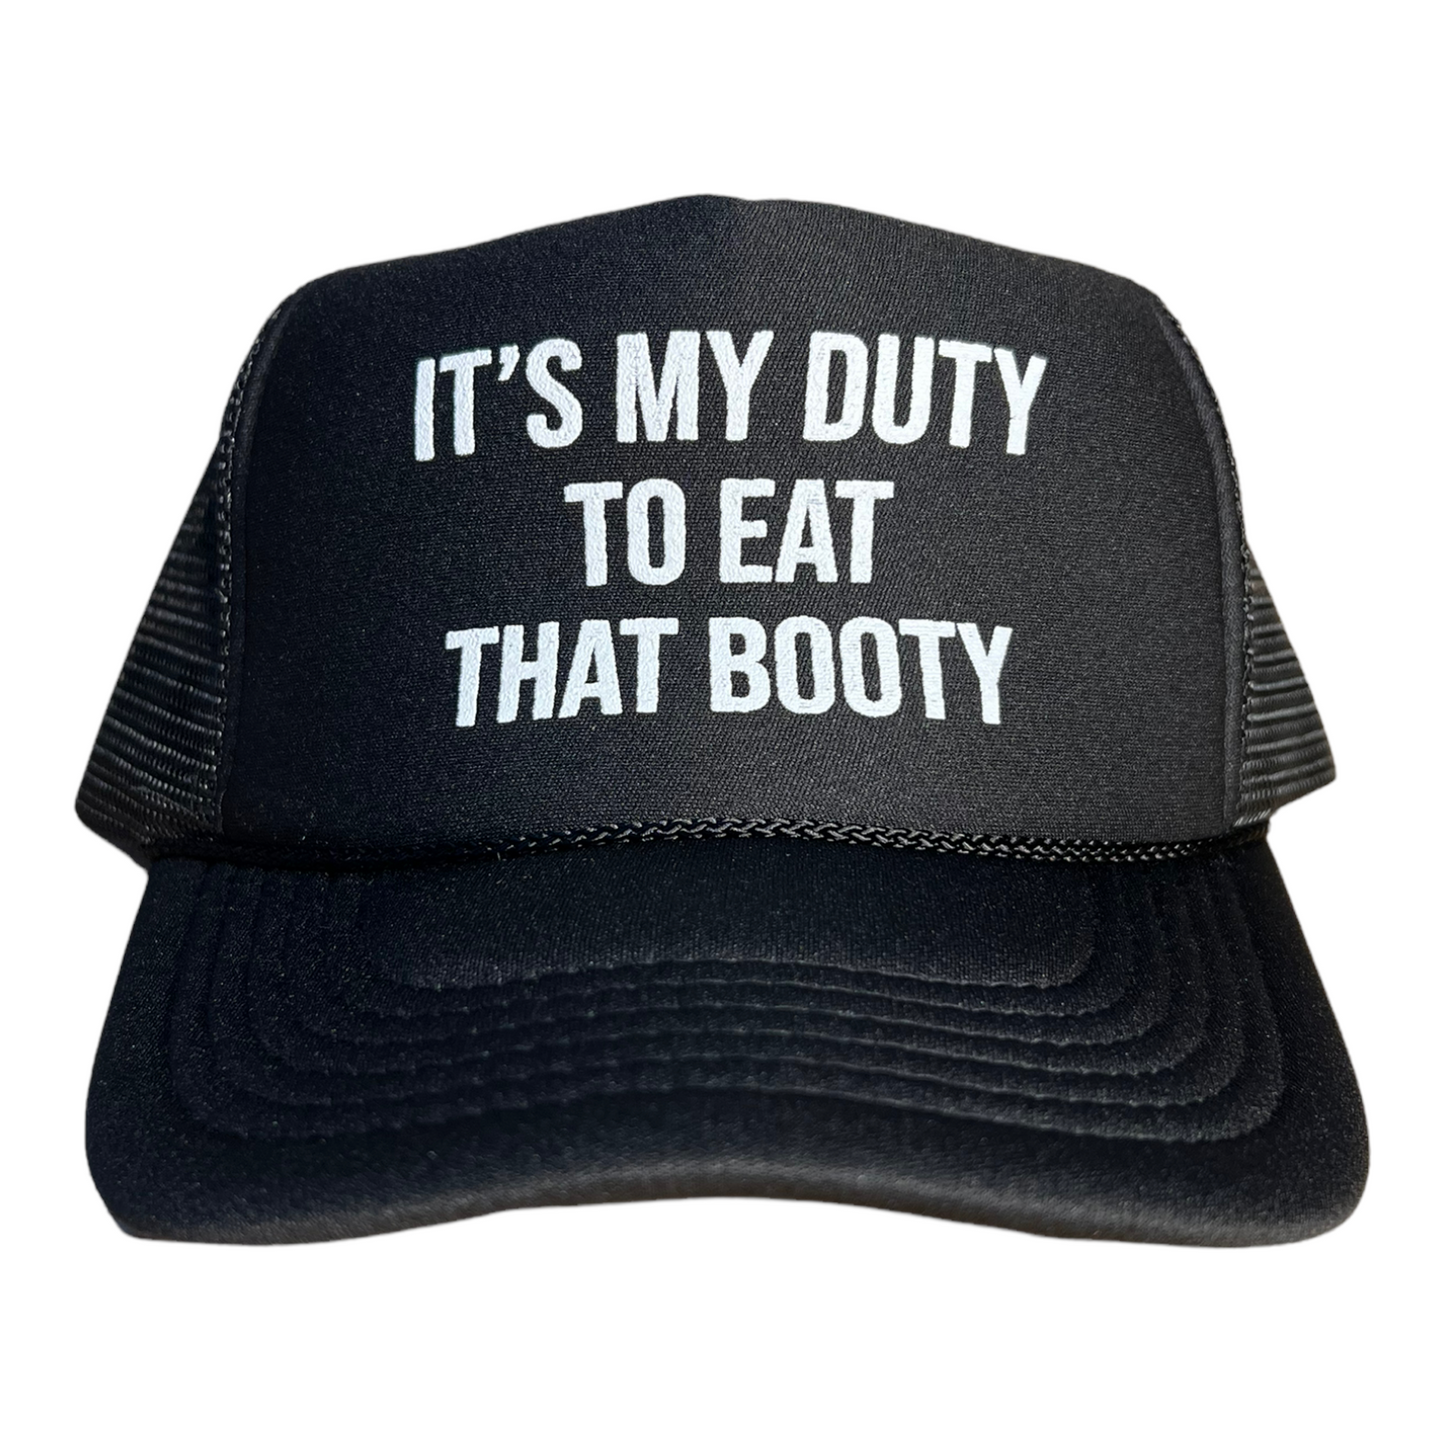 It's My Duty To Eat That Booty Trucker Hat Funny Trucker Hat Black